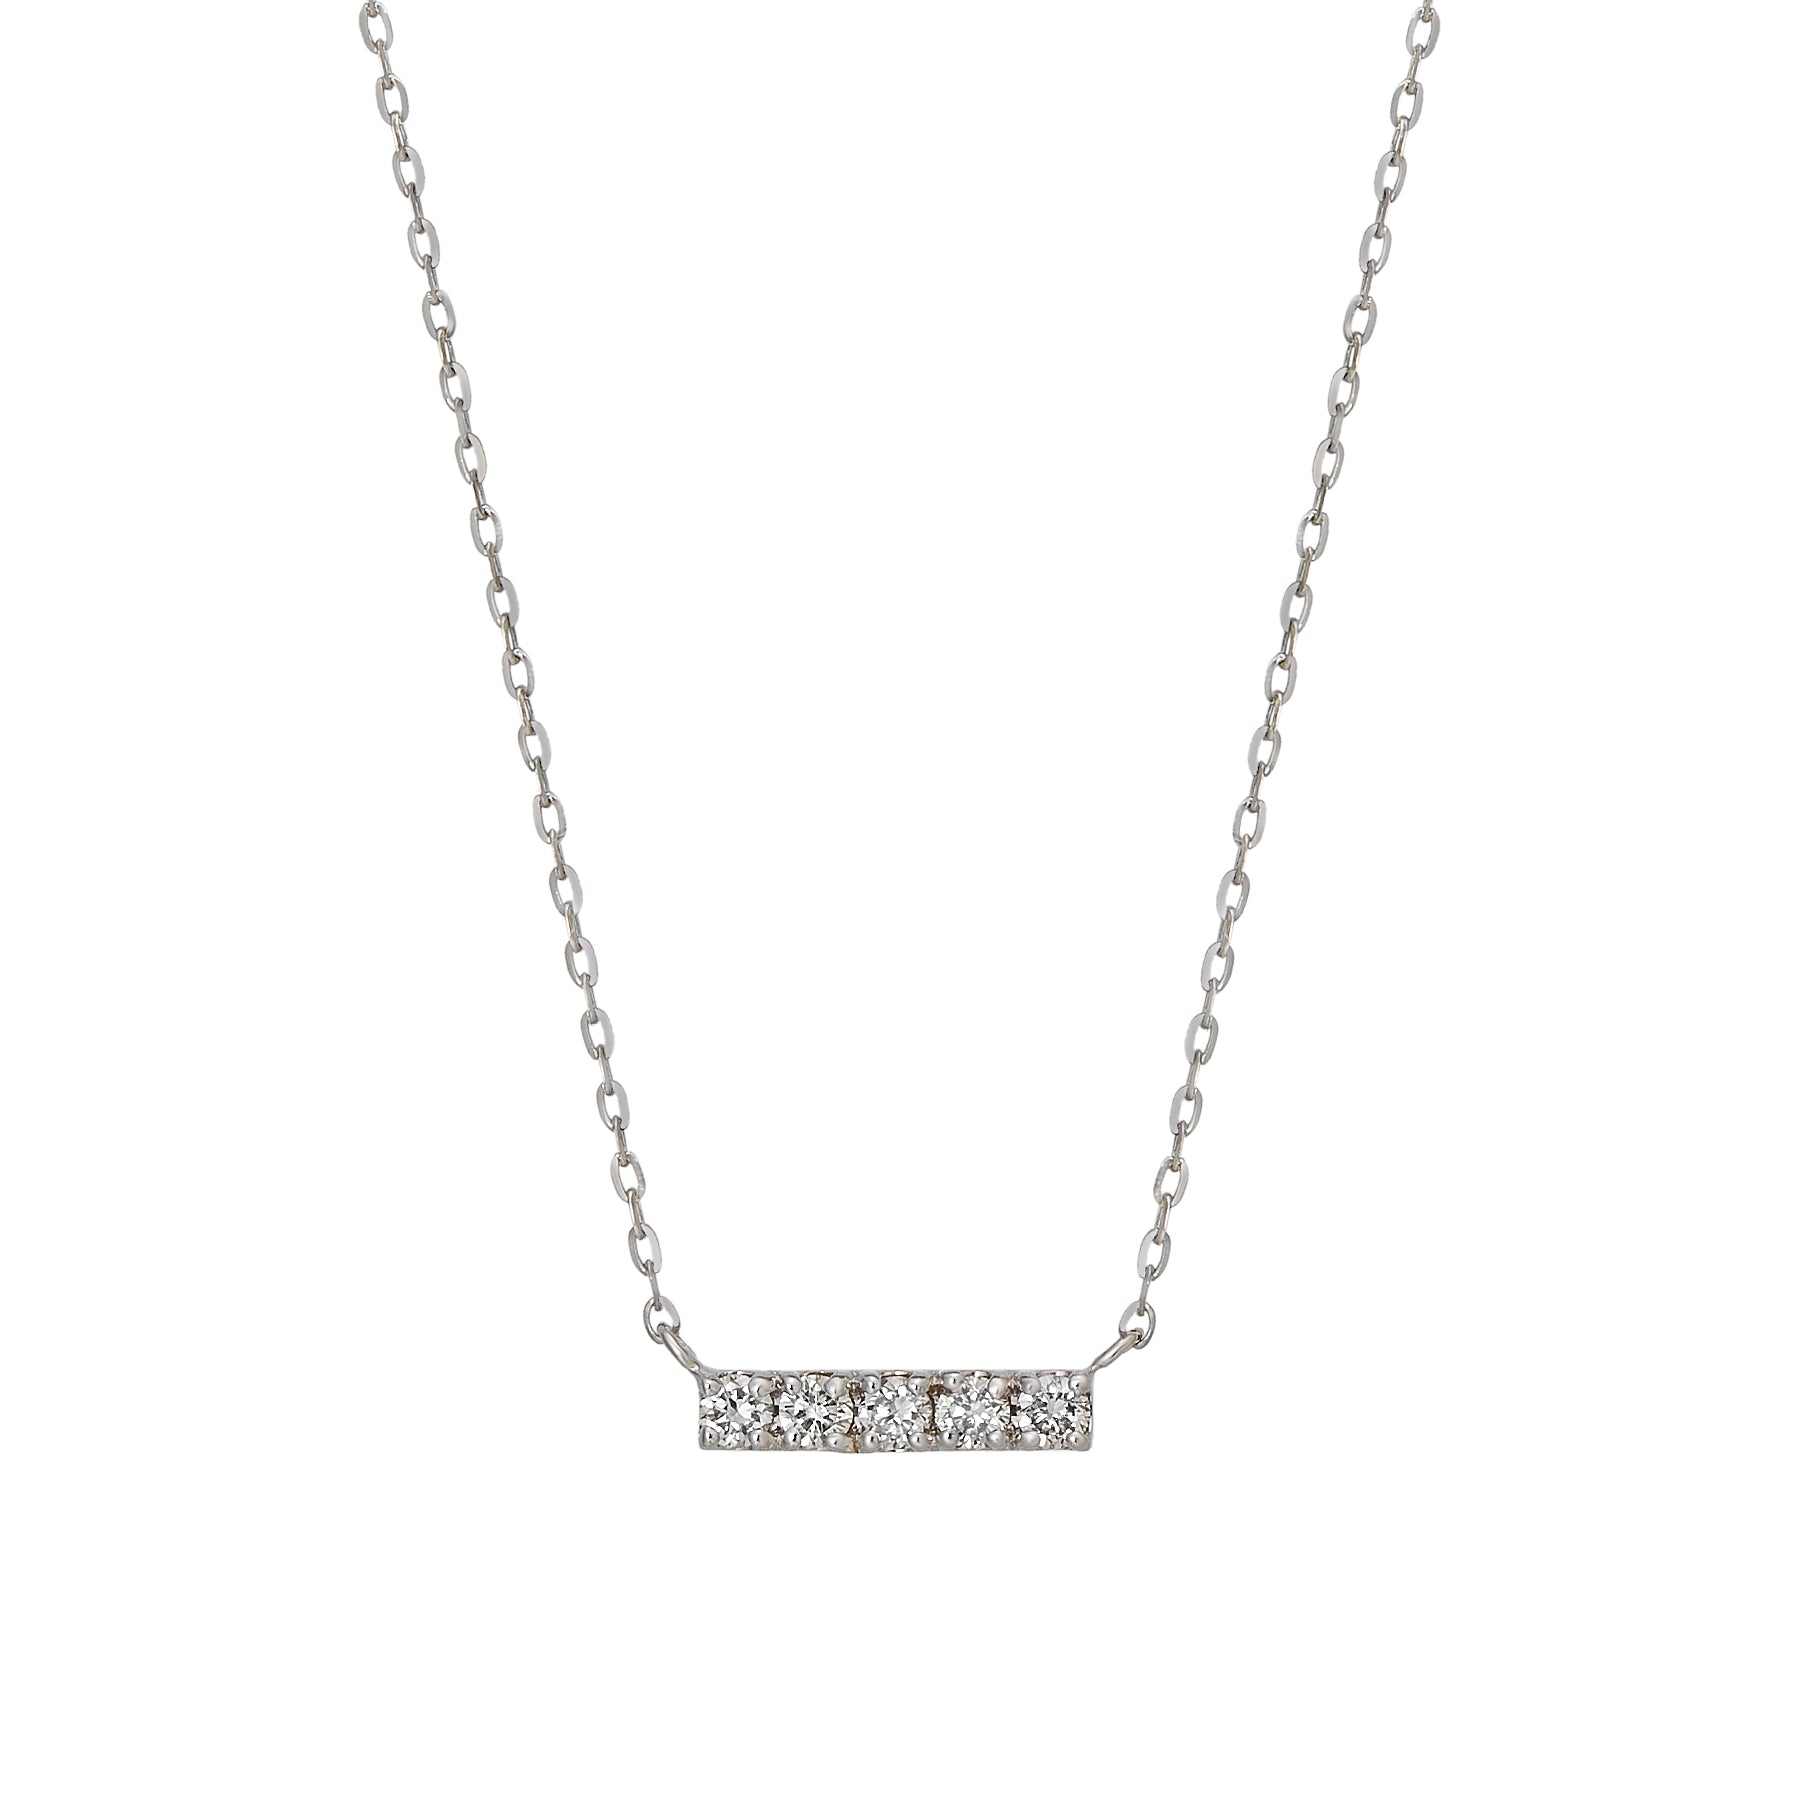 10K White Gold Diamond 5-Stone Necklace - Product Image